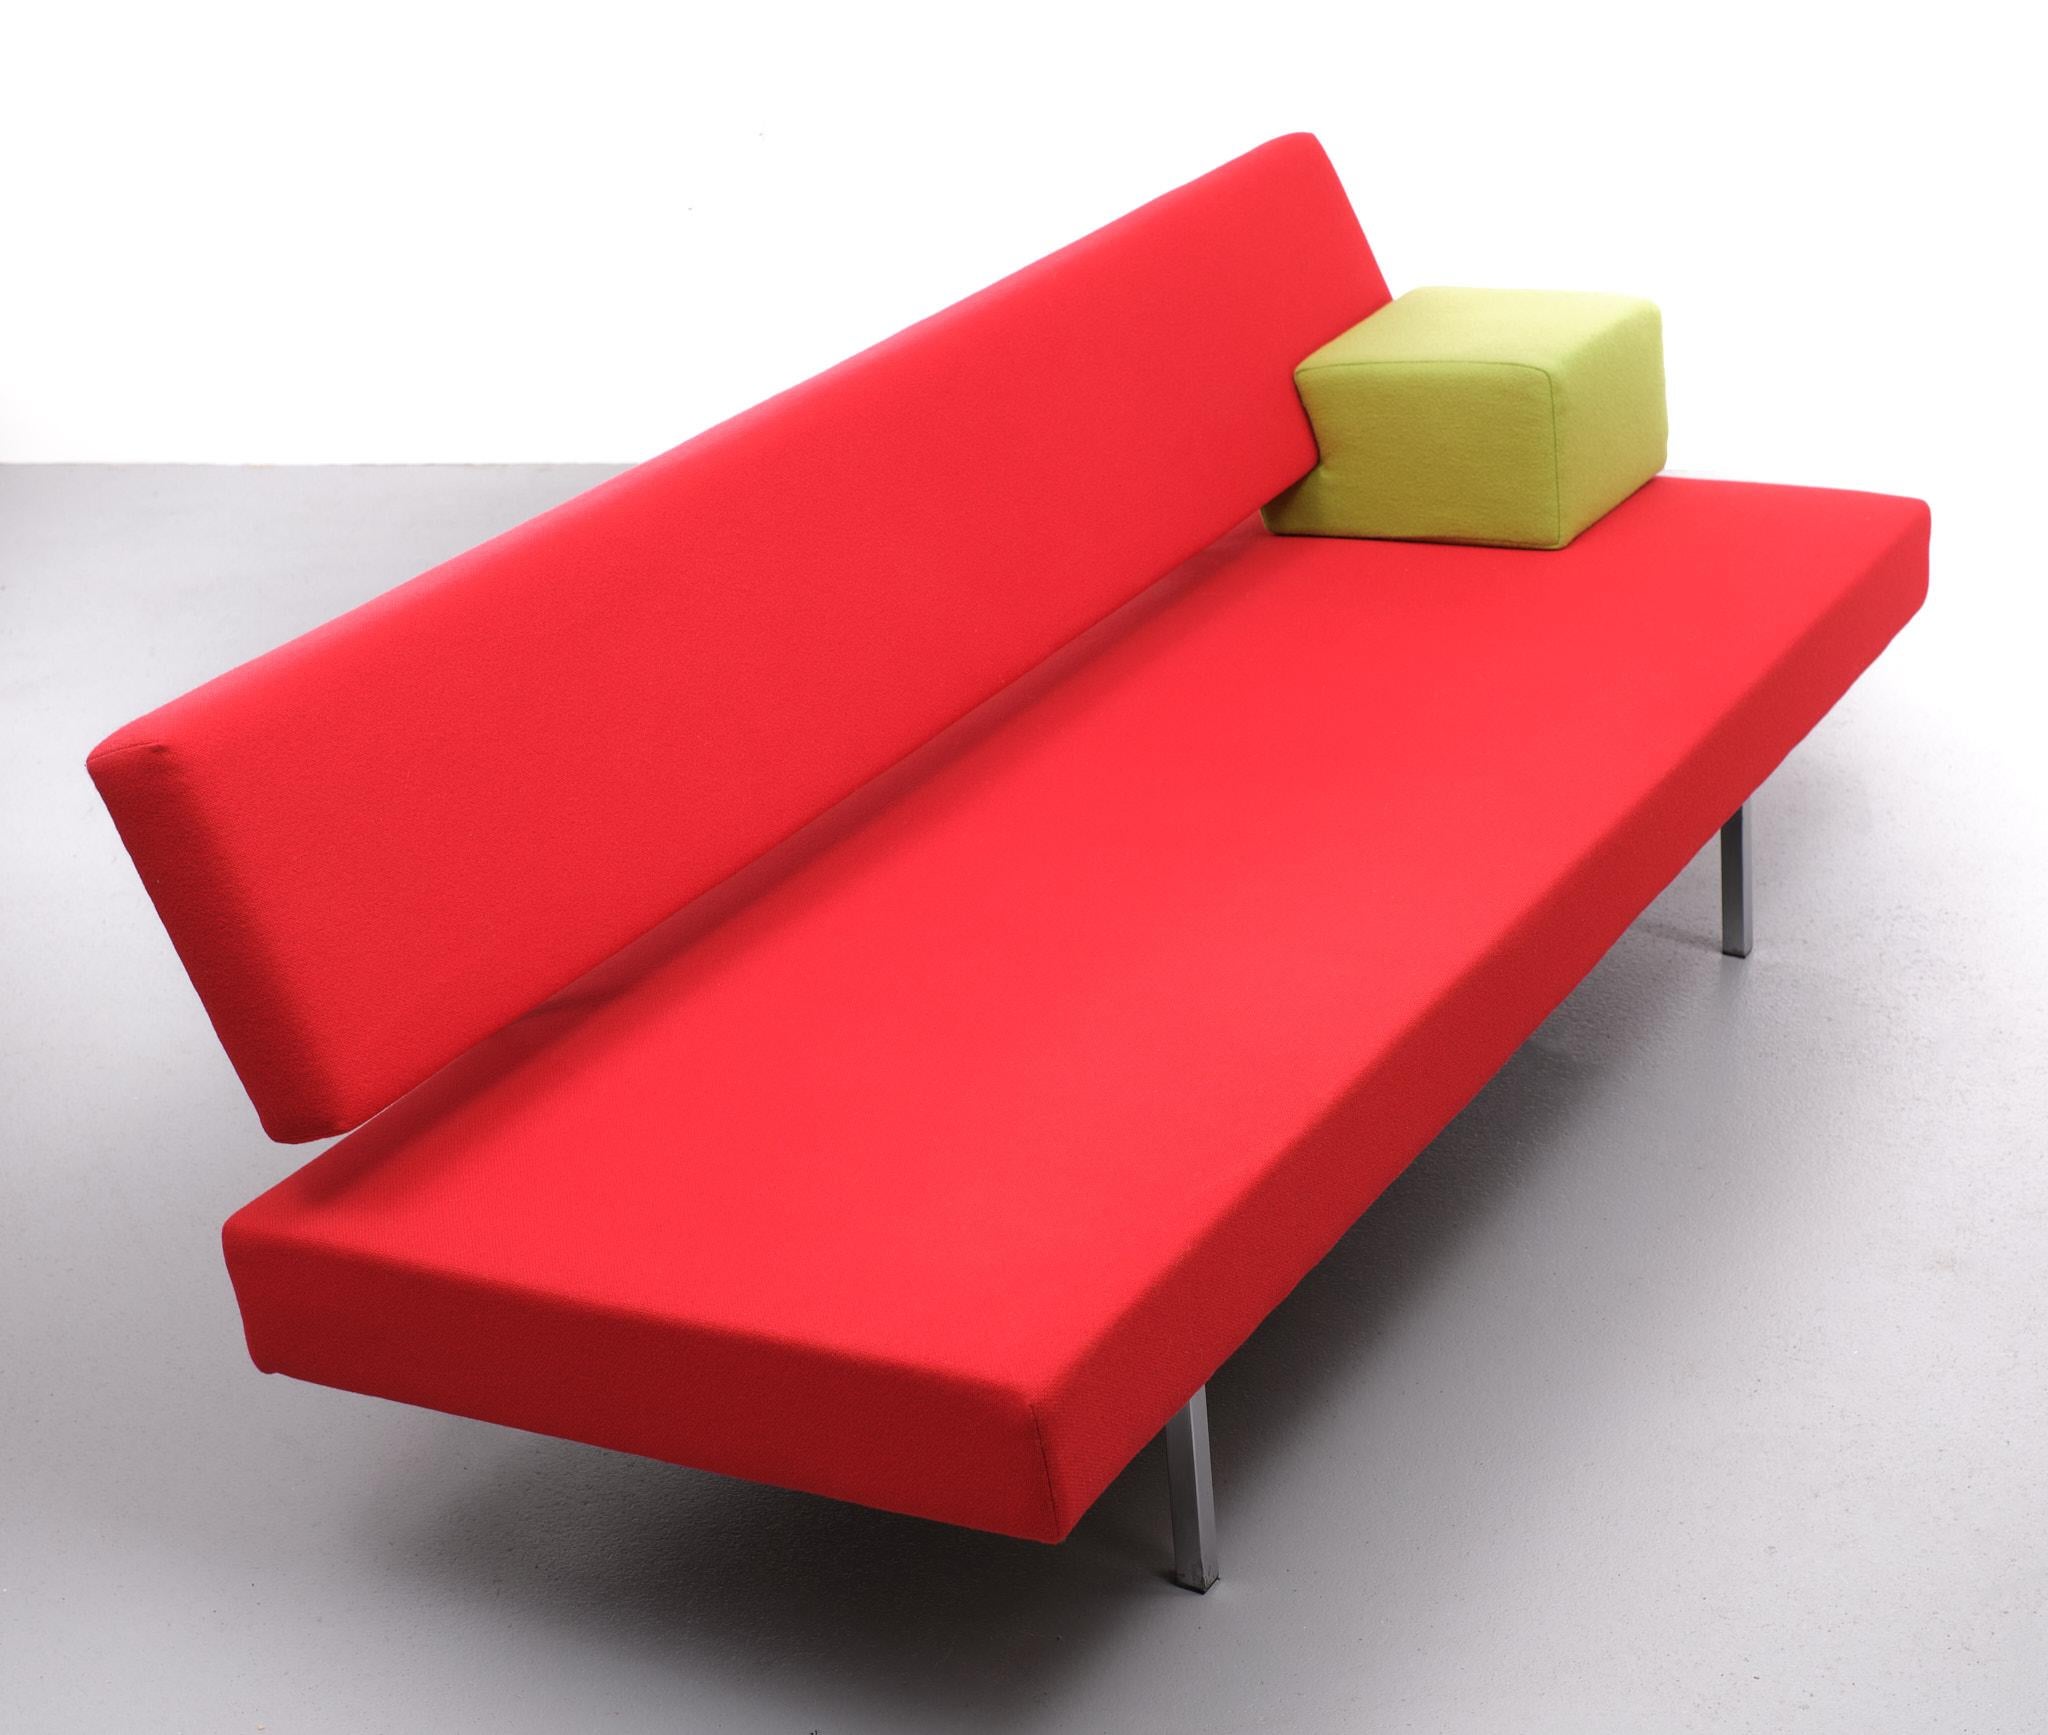 Mid-Century Modern Martin Visser Red Sofa Day Bed 1960s Dutch